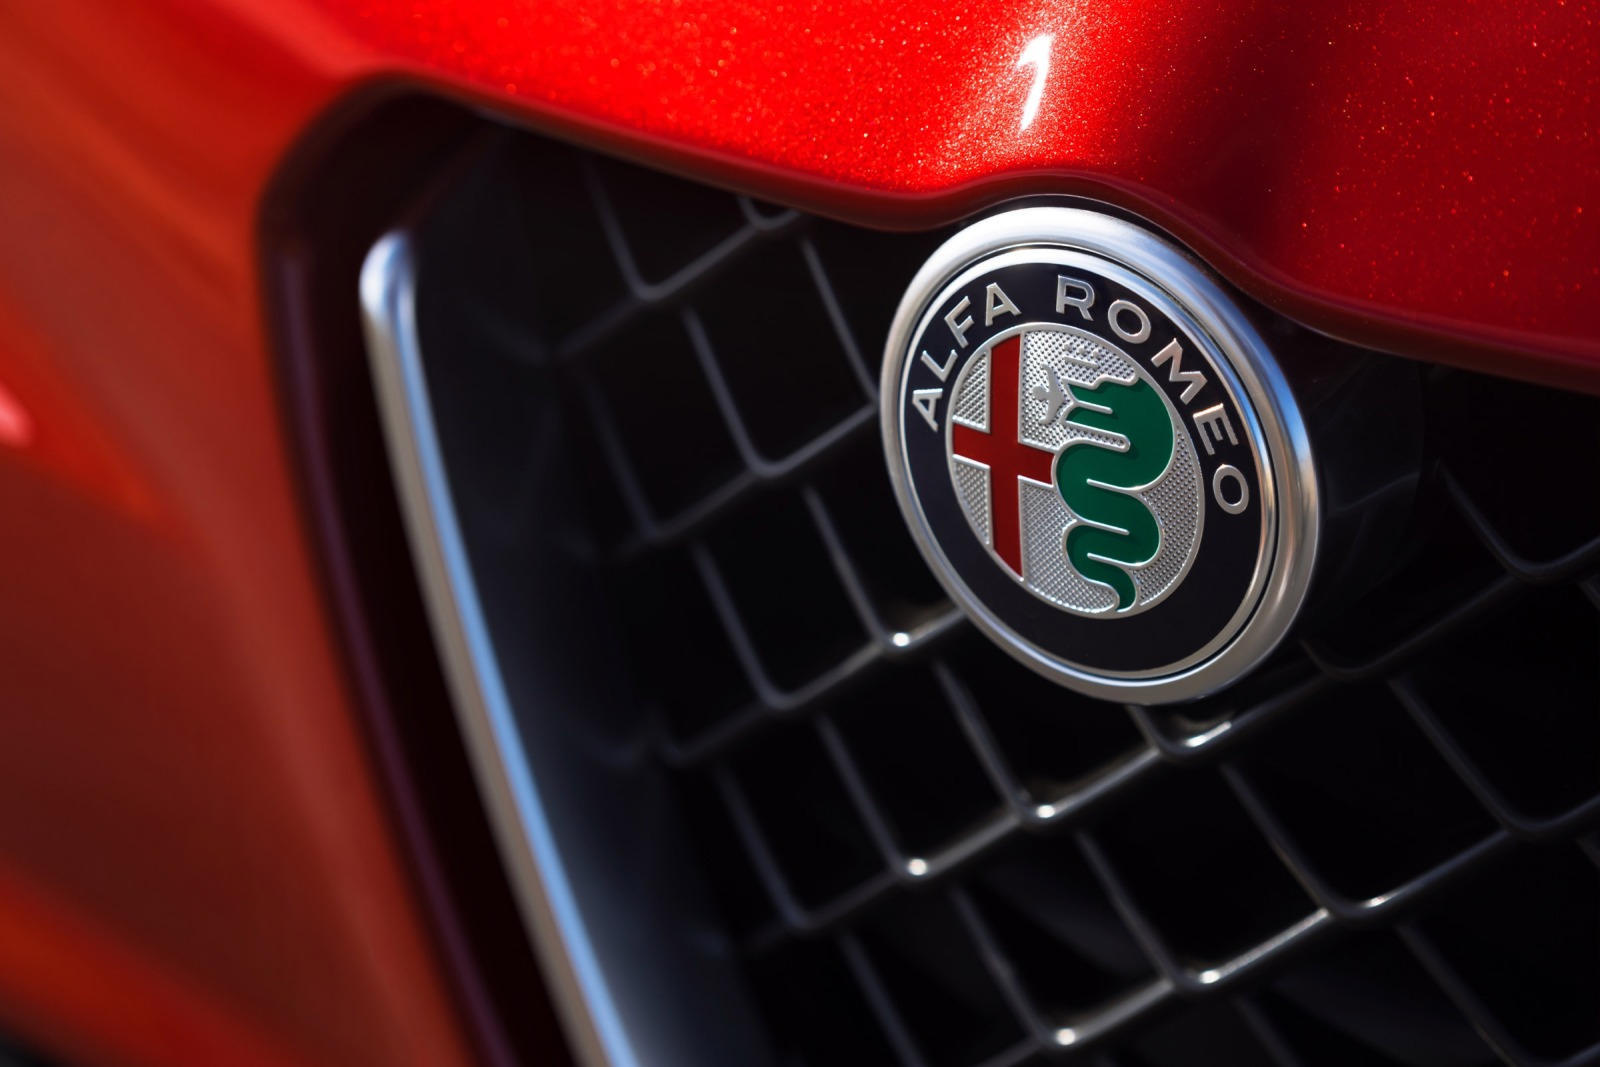 Музей был открыт для СМИ и публики, но придерживался действующих протоколов безопасности. Были выставлены и такие классические автомоюили как Alfa Romeo Spider, а также потрясающая Giulia, диапазон, который недавно был возглавлен маниакальной GTA.